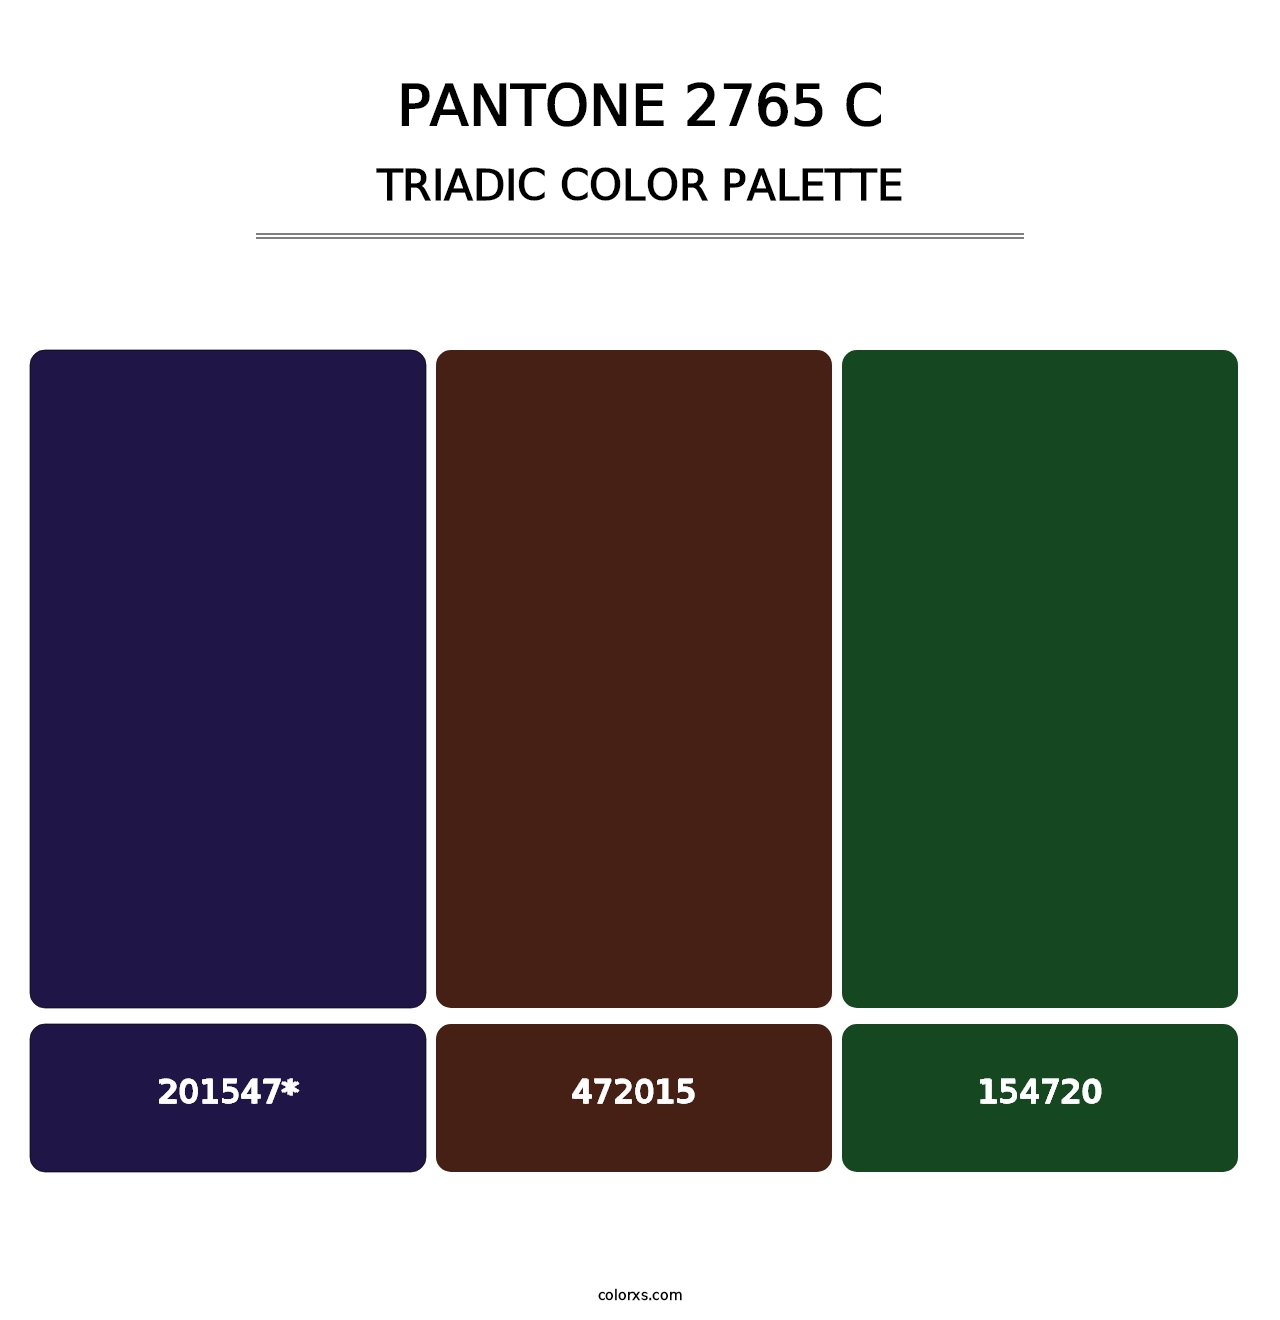 PANTONE 2765 C - Triadic Color Palette